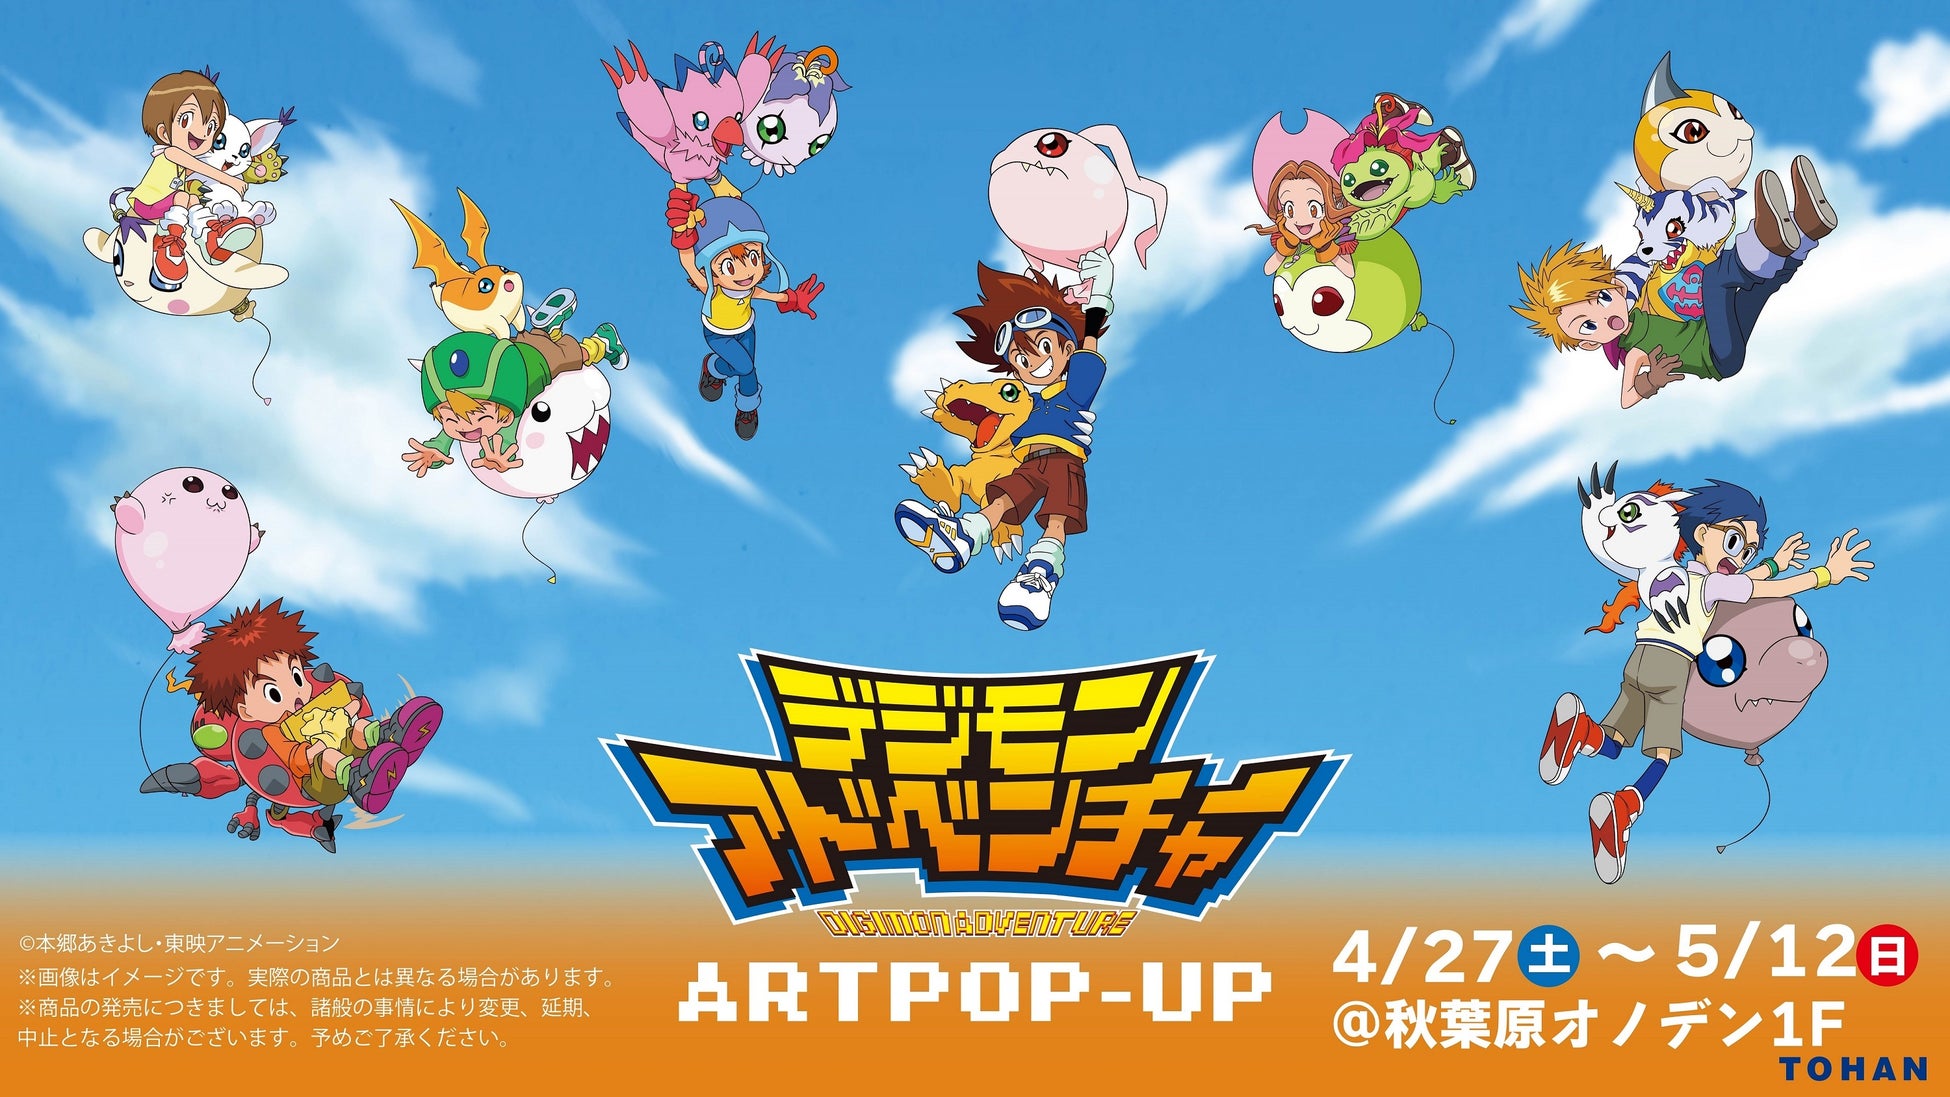 「デジモンアドベンチャー ART POP-UP」を4月27日より秋葉原オノデンにて開催